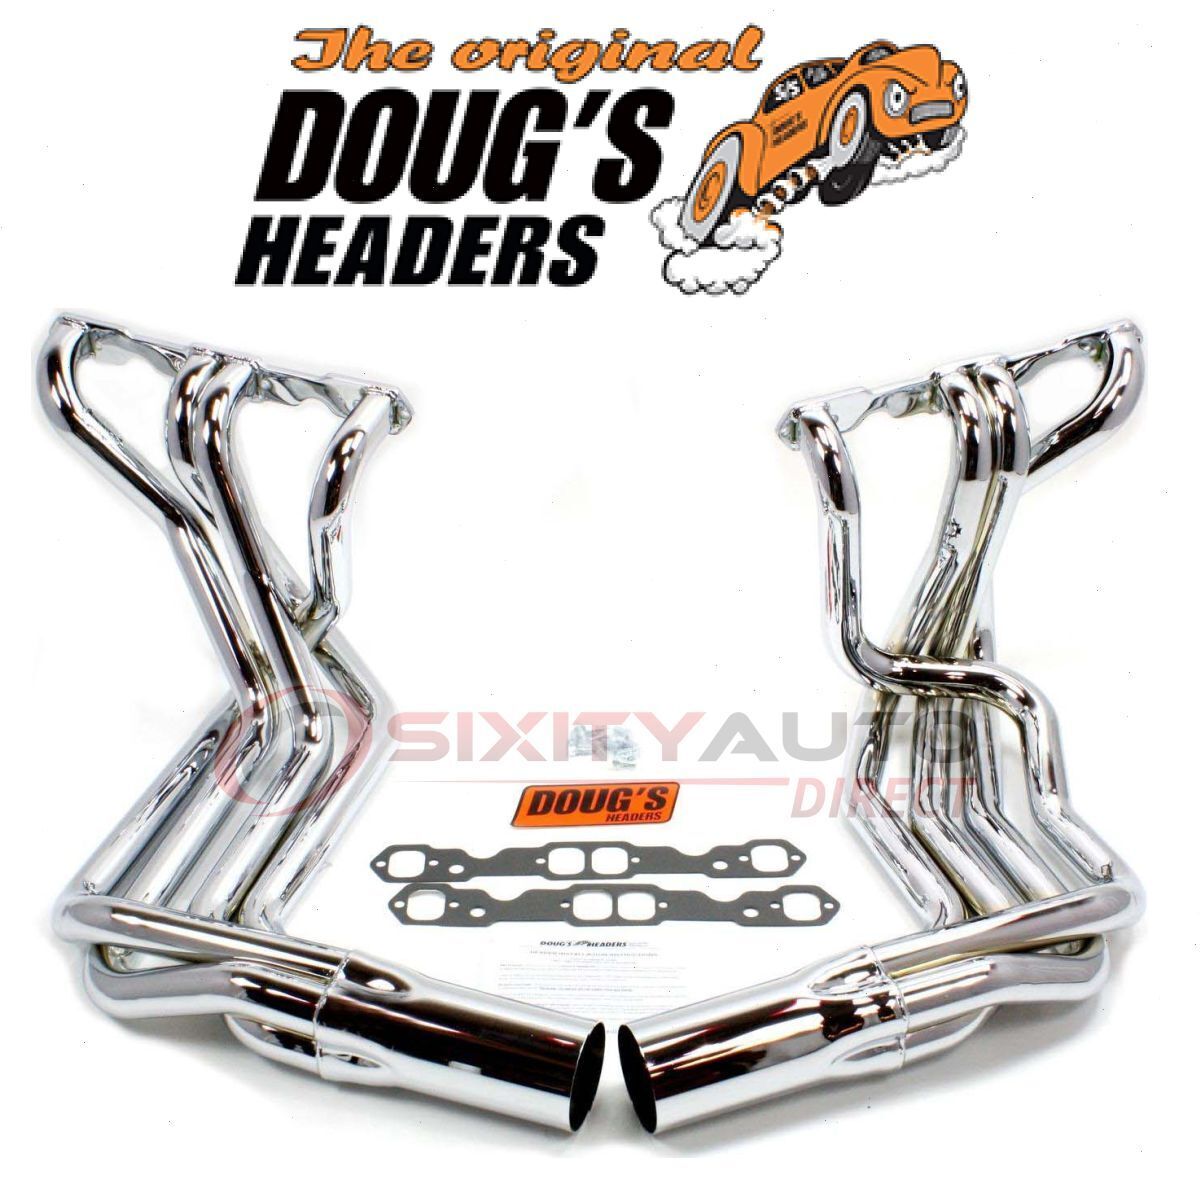 Dougs Headers D380-C Exhaust Header for Manifolds tt